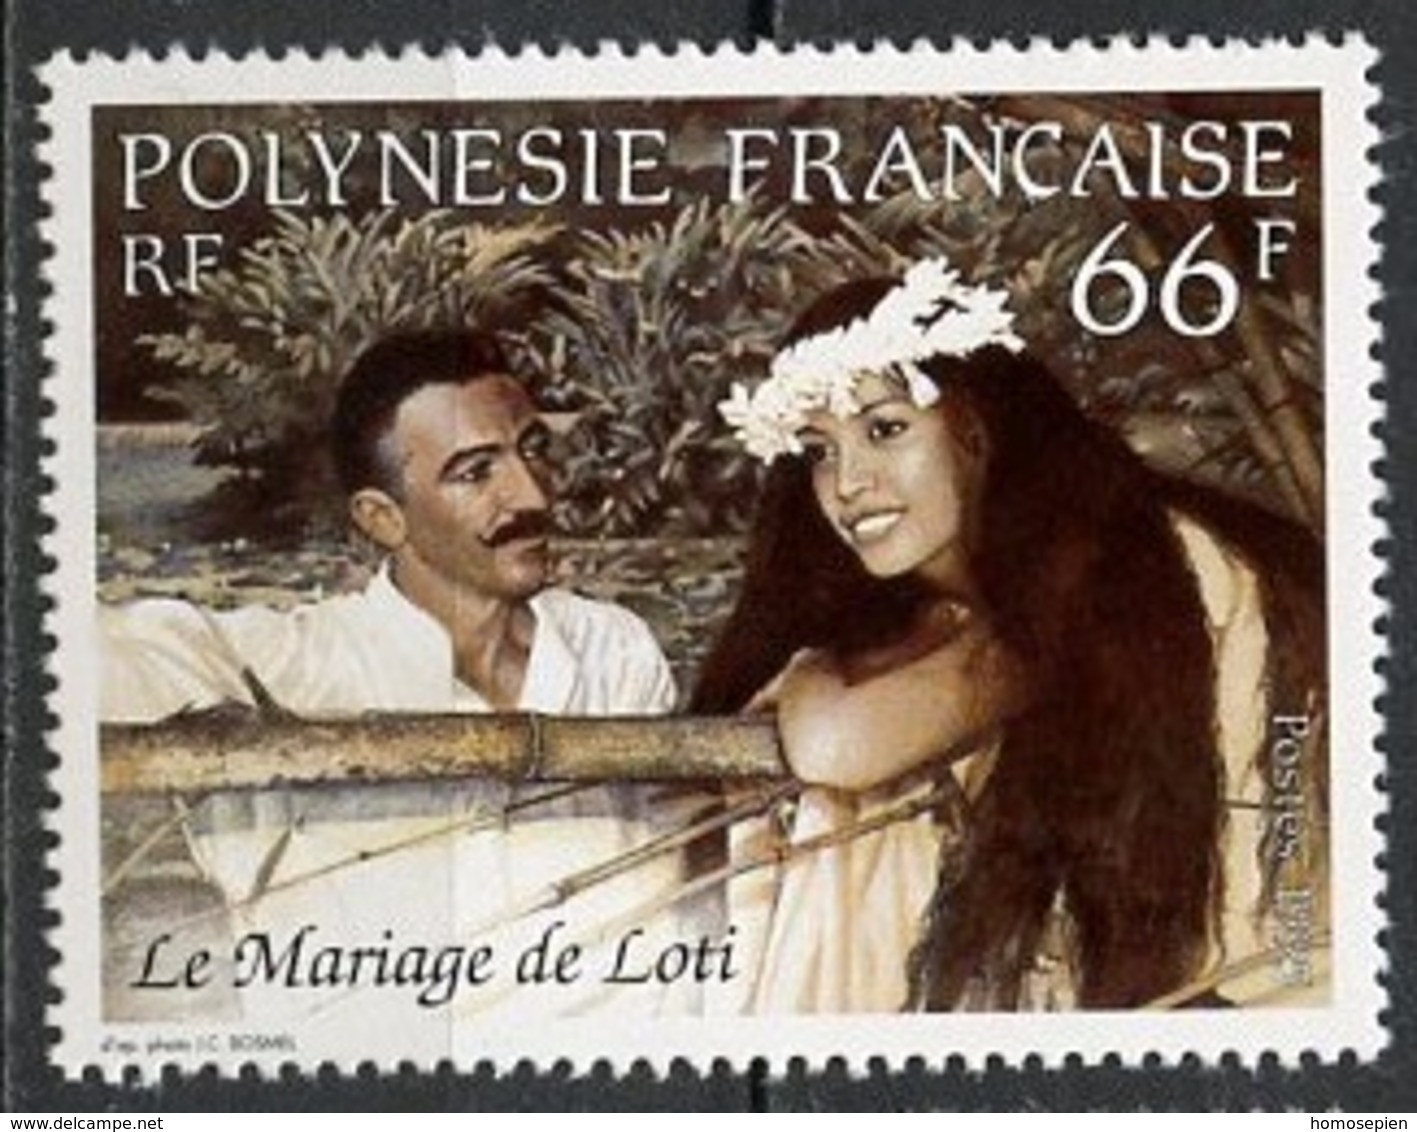 Polynésie Française - Polynesien - Polynesia 1995 Y&T N°482 - Michel N°680 *** - 66f Mariage De P Loti - Neufs